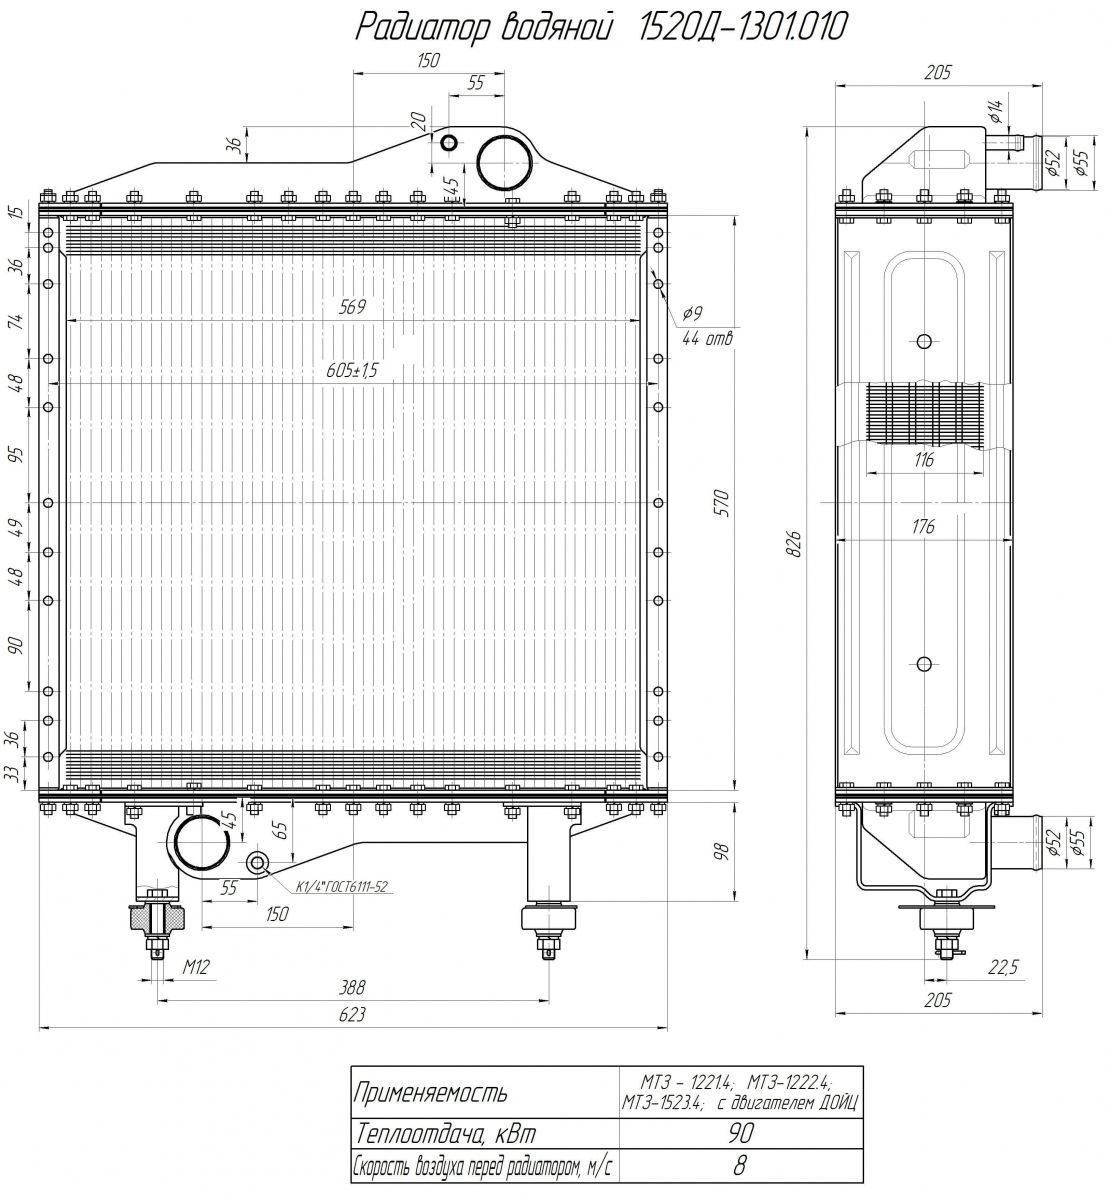 Схема радиатора 1520-1301010 МТЗ-1222/1523 Дойц